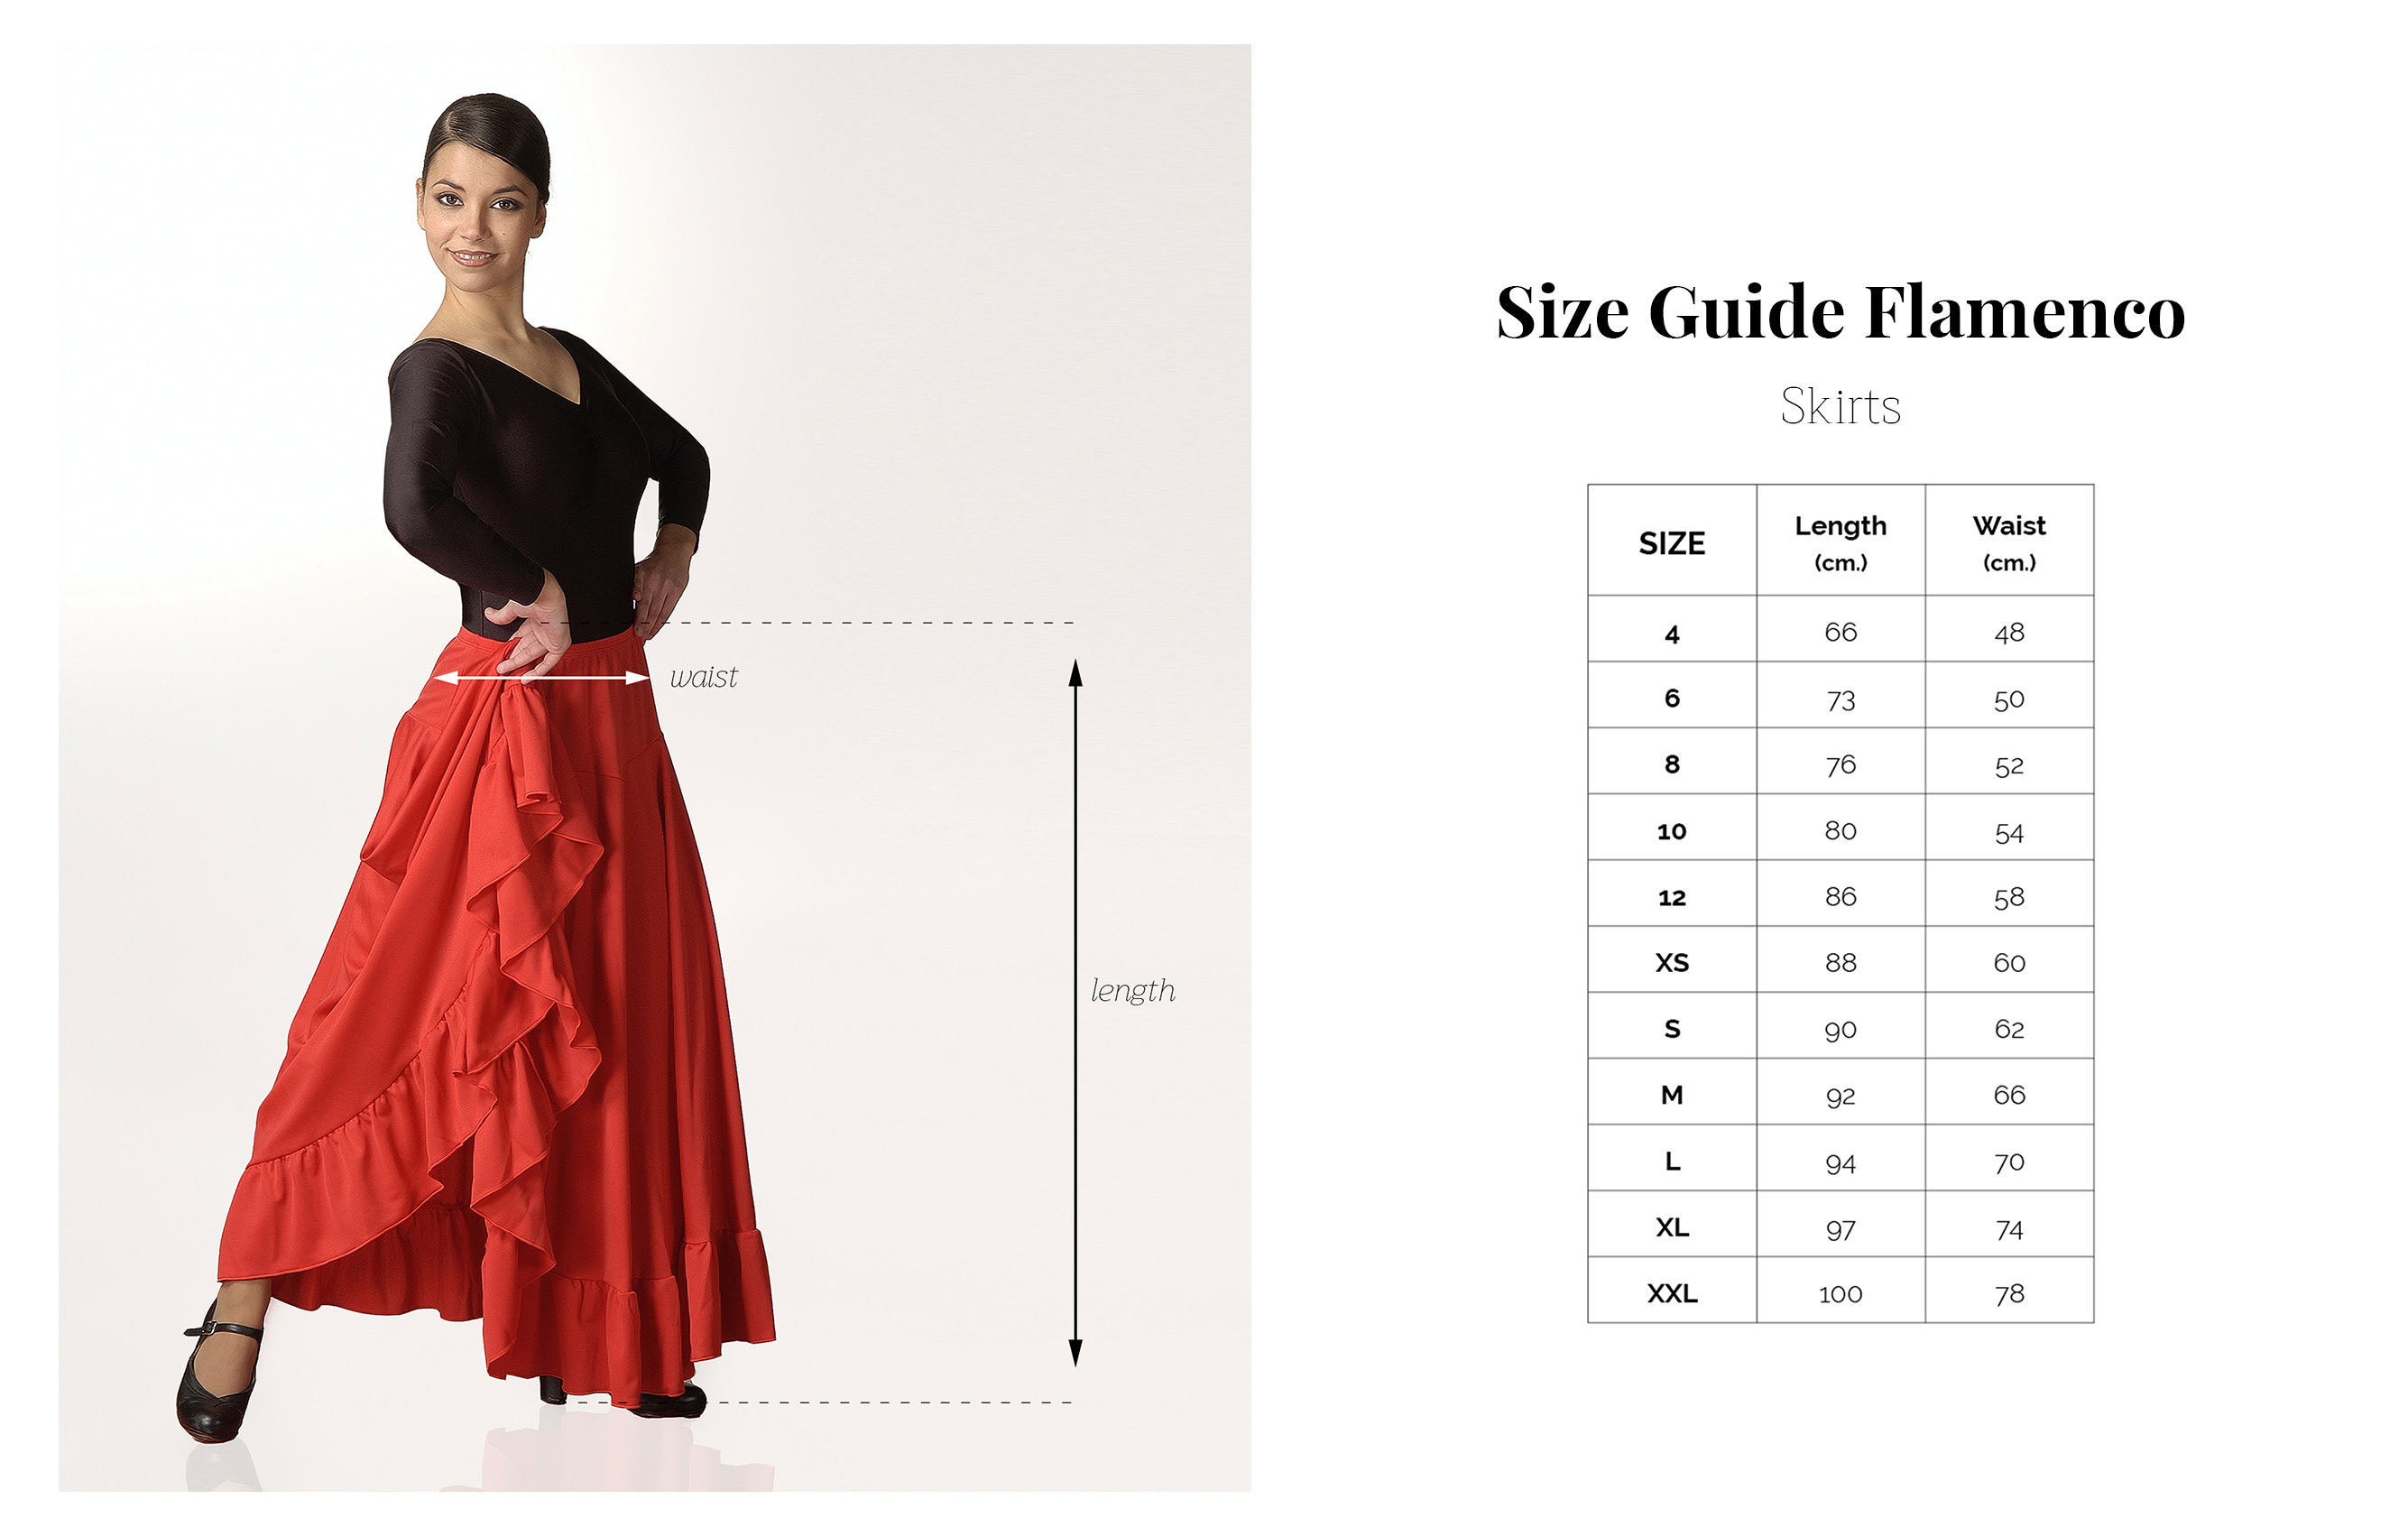 Size Guide Flamenco